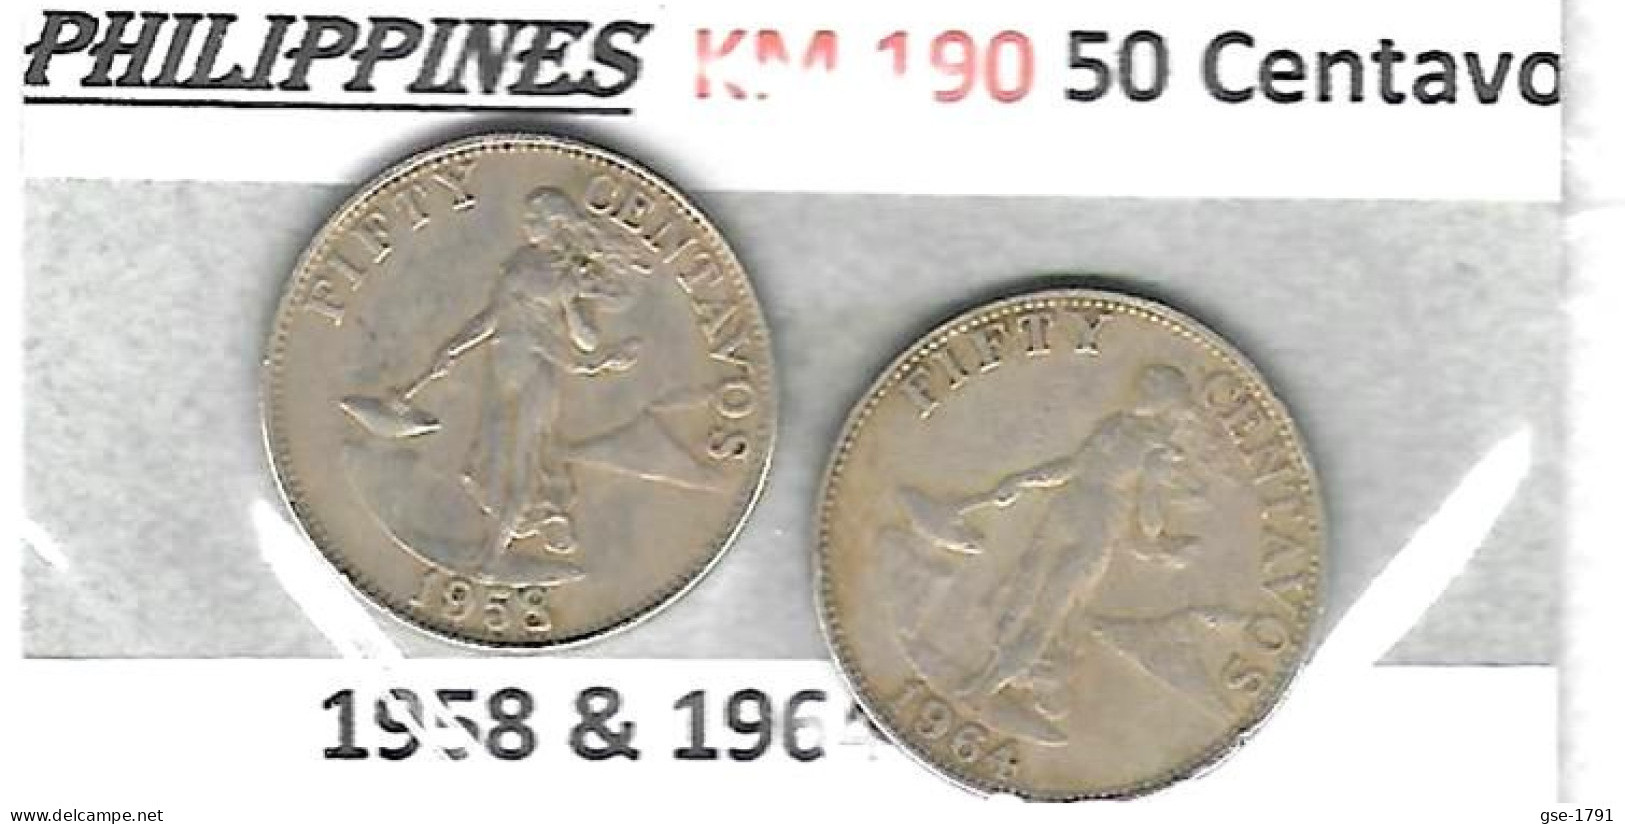 PHILIPPINES Républic Décimal, Petites Monnaies, Femme, 50 Centavos  KM  190 - Philippines